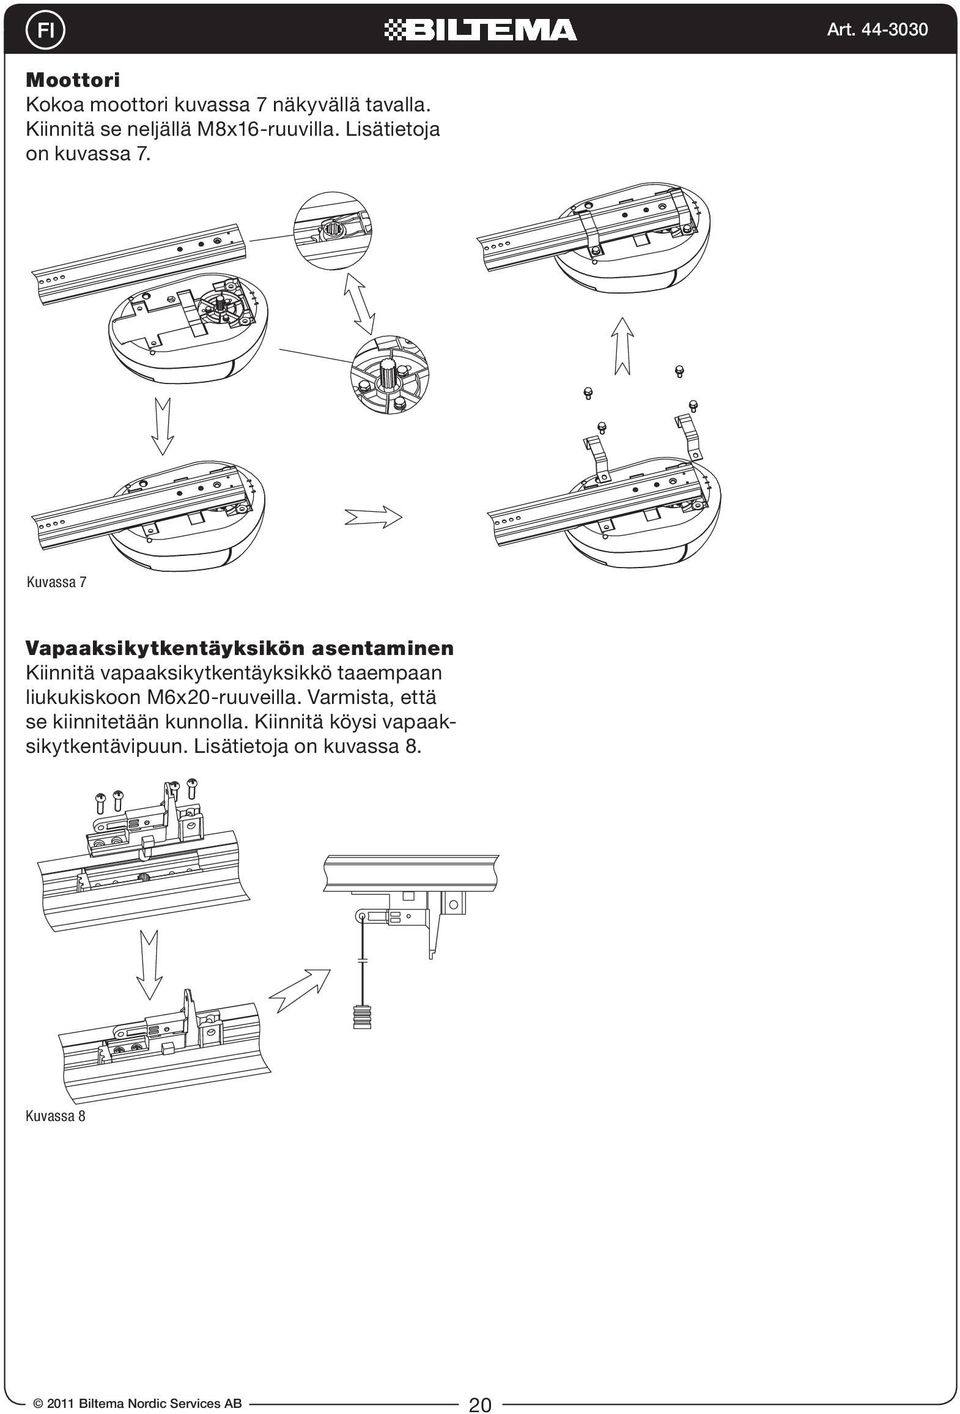 Kuvassa 7 Vapaaksikytkentäyksikön asentaminen Kiinnitä vapaaksikytkentäyksikkö taaempaan